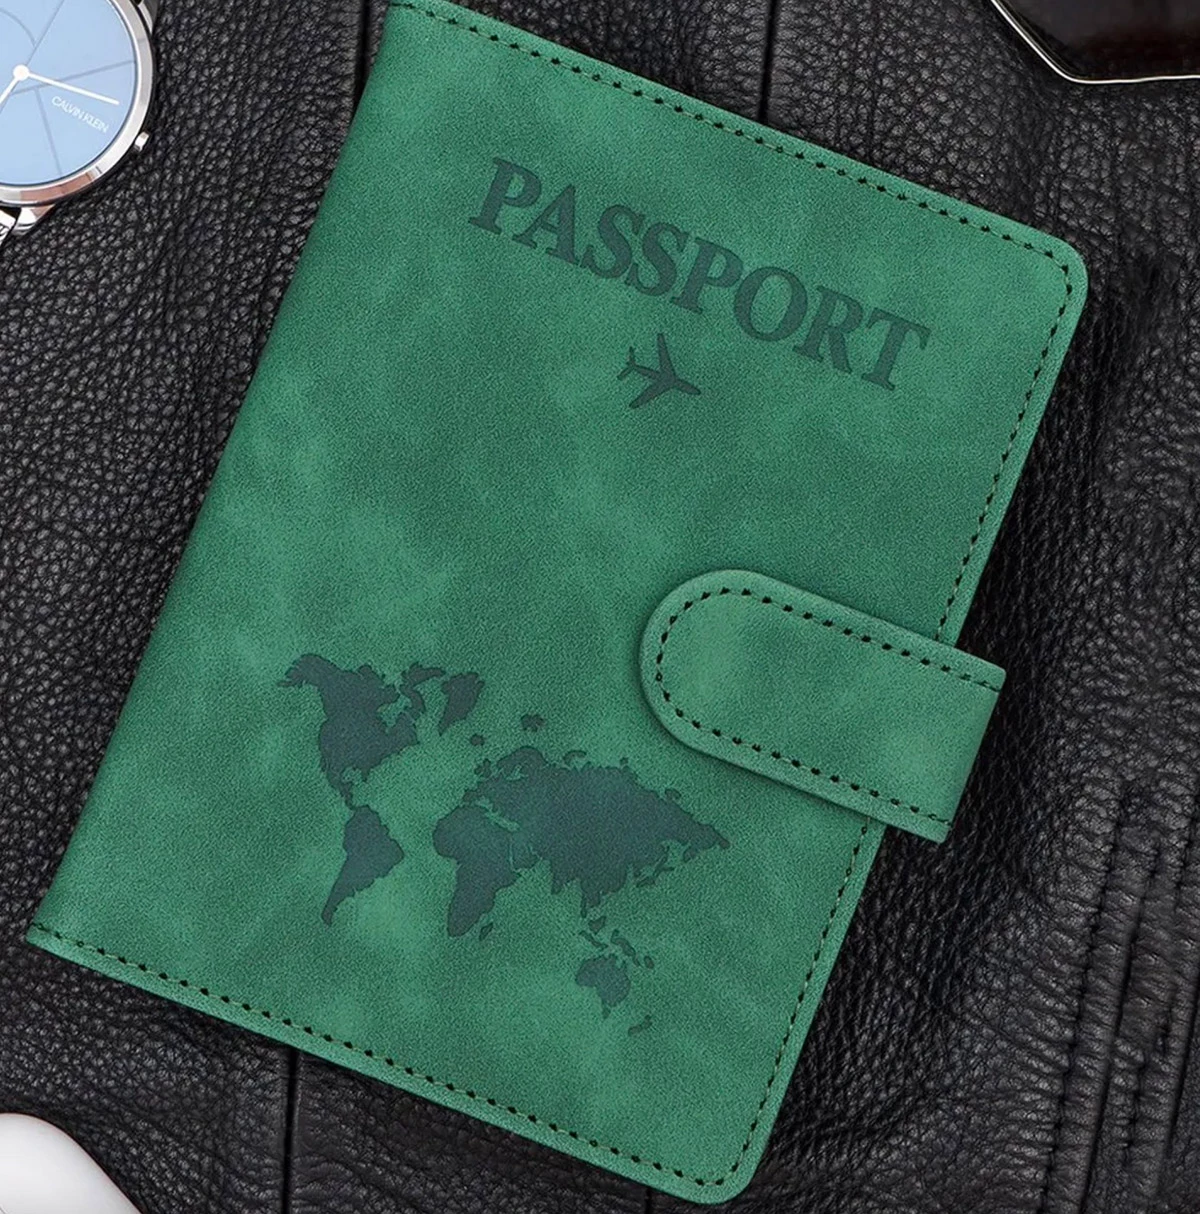 <p>Обложка на паспорт с магнитной застежкой</p>

<p></p>